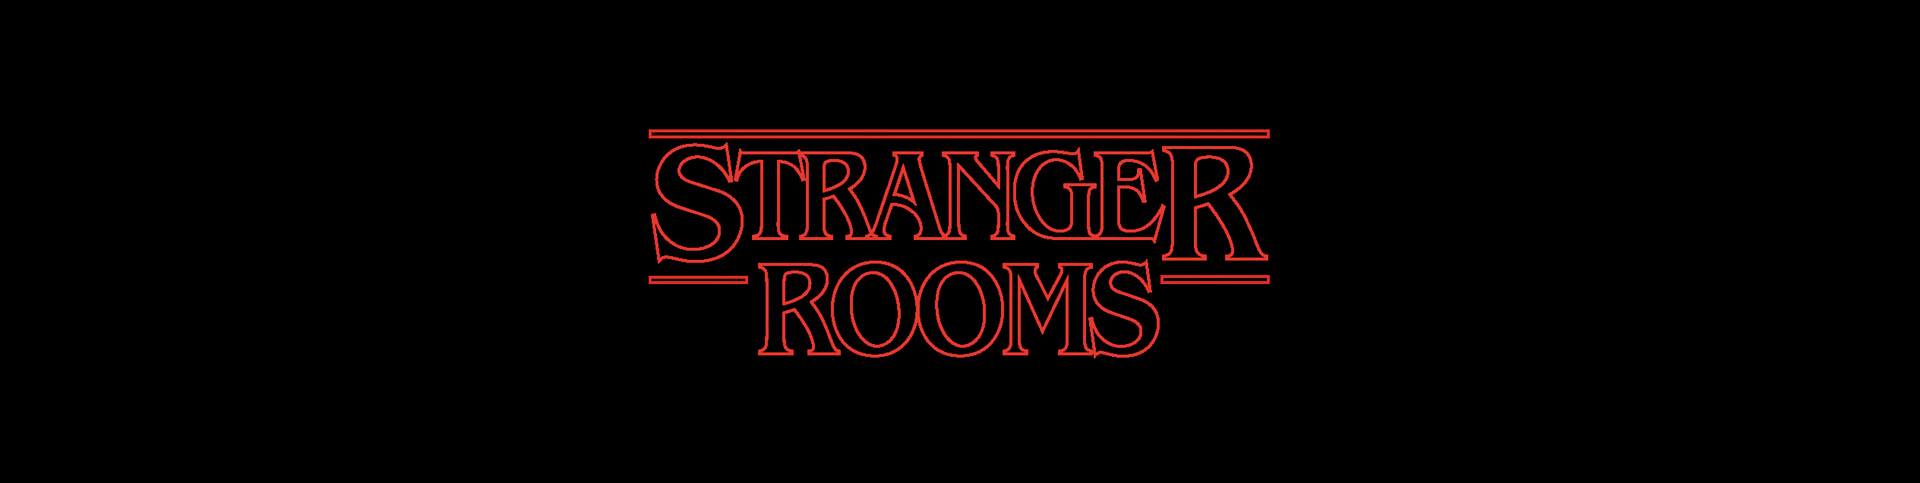 Stranger Rooms